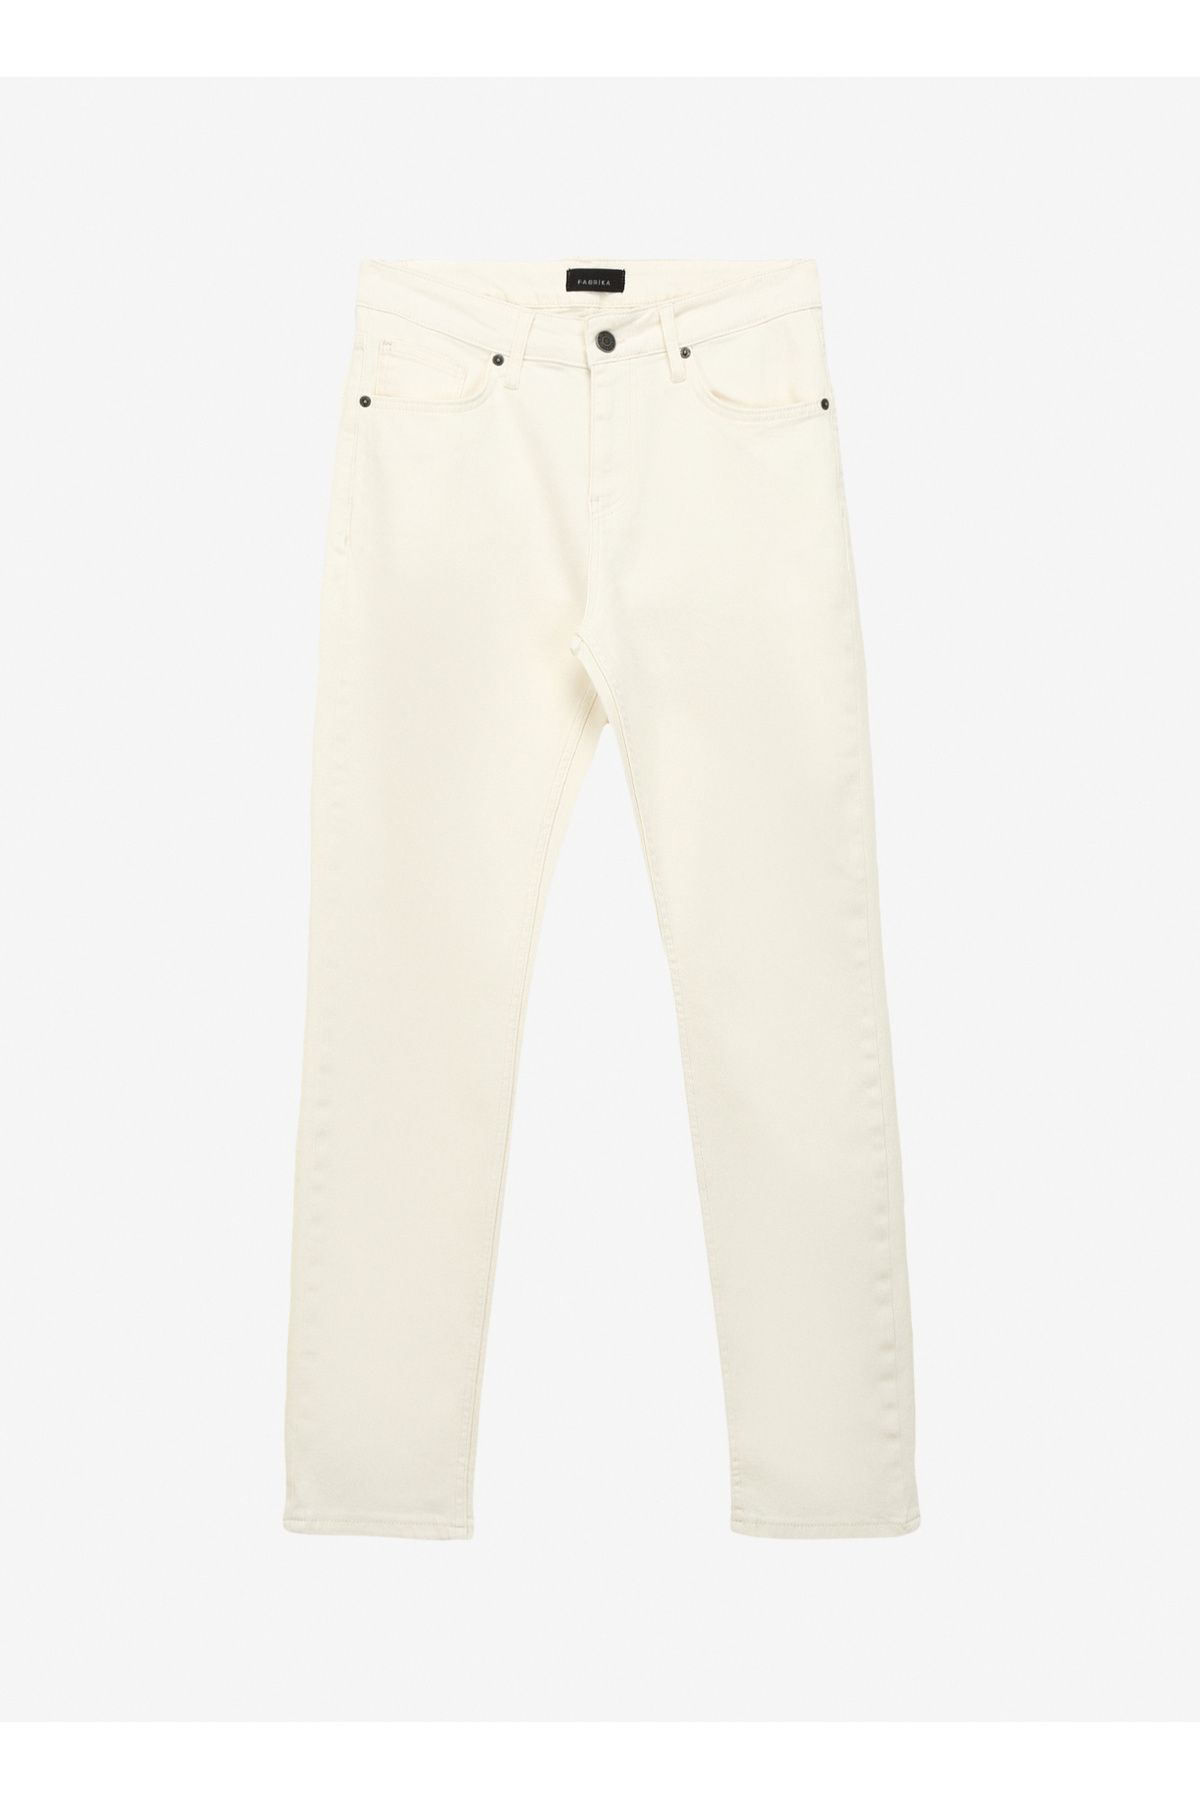 Fabrika Normal Bel Normal Paça Slim Fit Kırık Beyaz Erkek Denim Pantolon F4SM-PNT 110